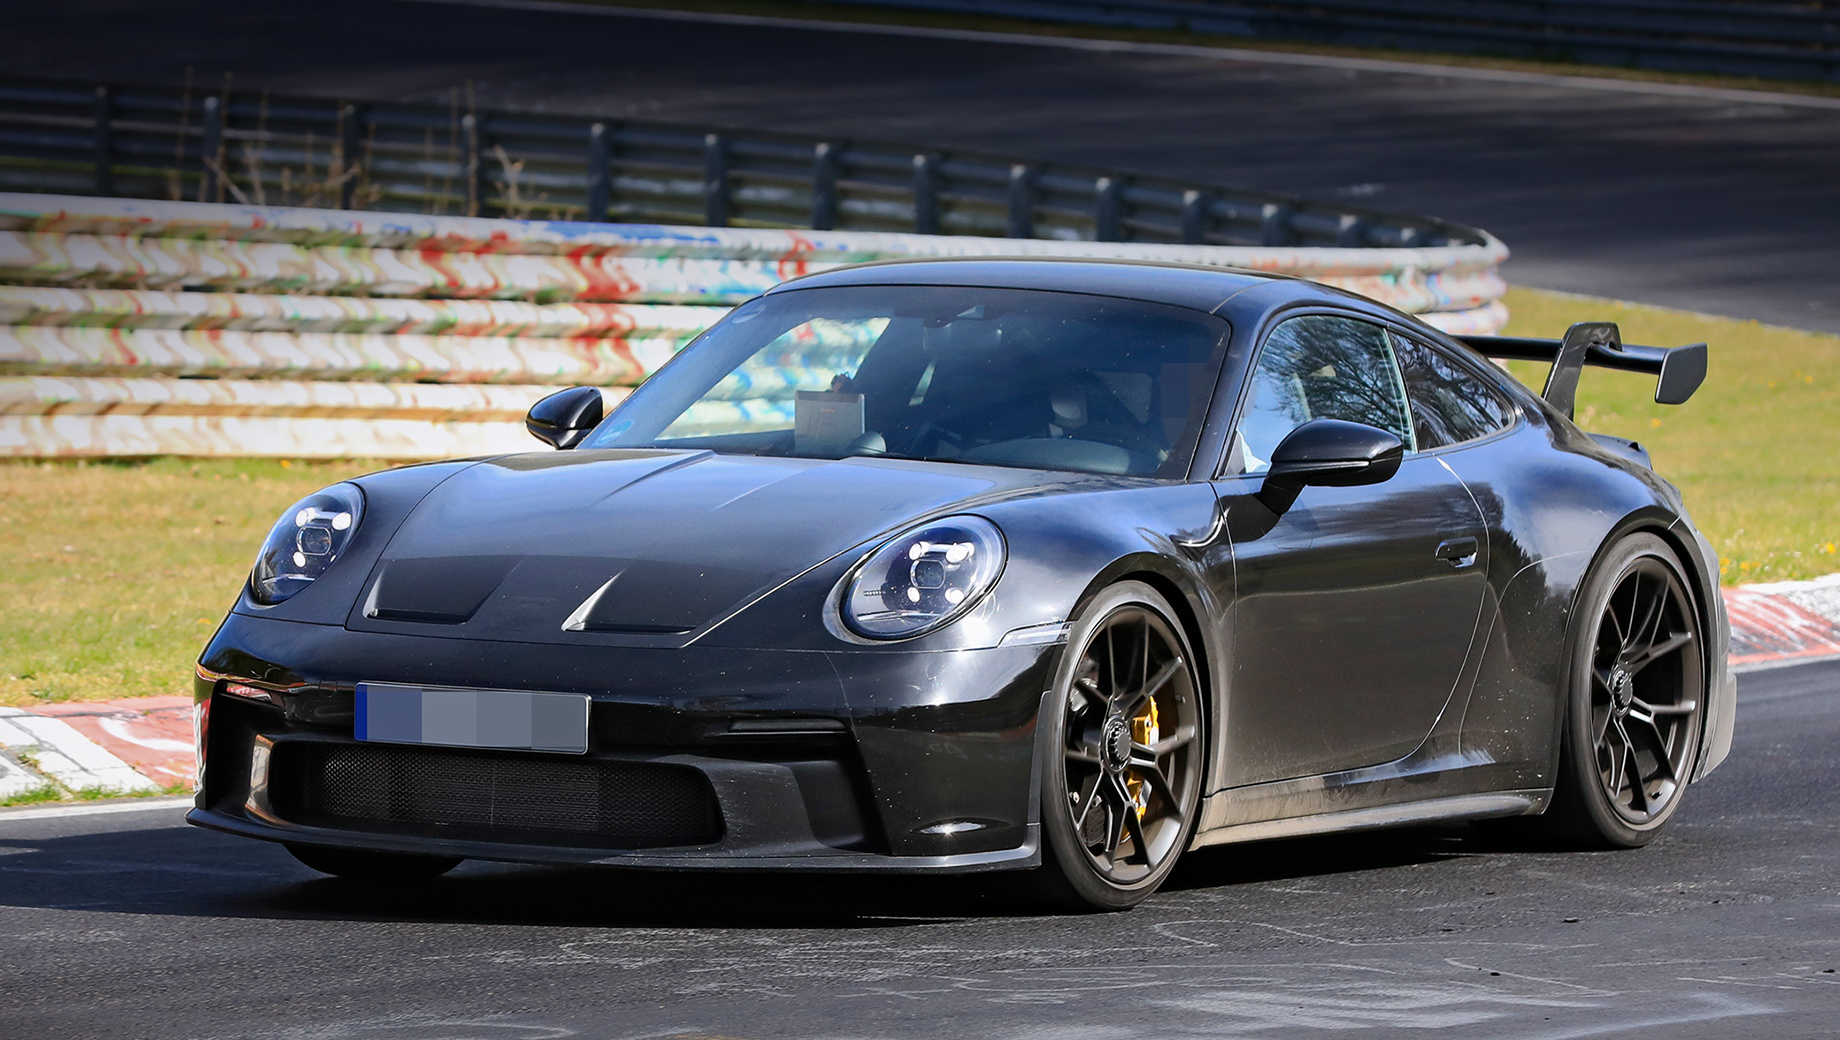 Porsche 911,Porsche 911 gt3. Предположительно, Porsche 911 GT3 следующей генерации дебютирует в четвёртом квартале 2020 года. Начальная цена на спорткар в Германии будет около 160 тысяч евро (13 млн рублей). Для сравнения, прежний 500-сильный GT3 стоил 153 тысячи евро (12,4 млн рублей).